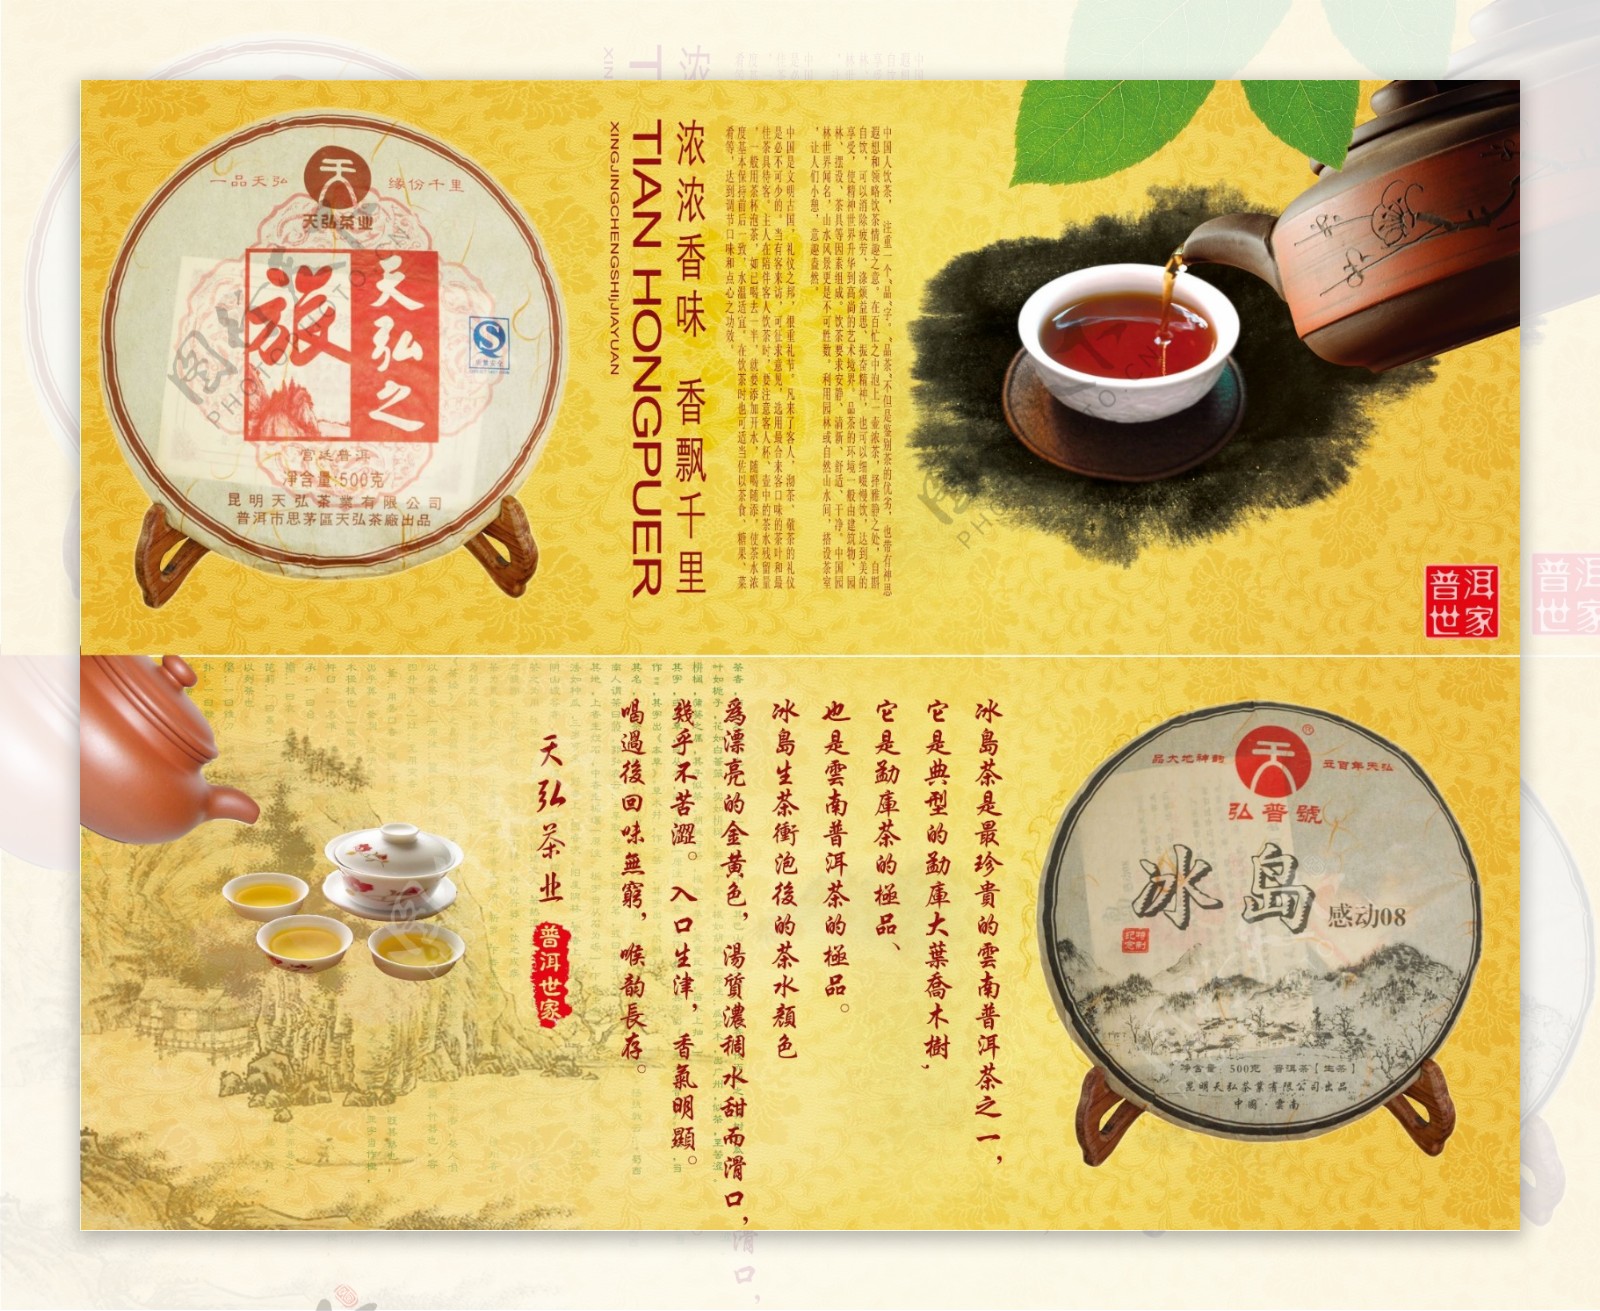 普洱茶产品宣传画册